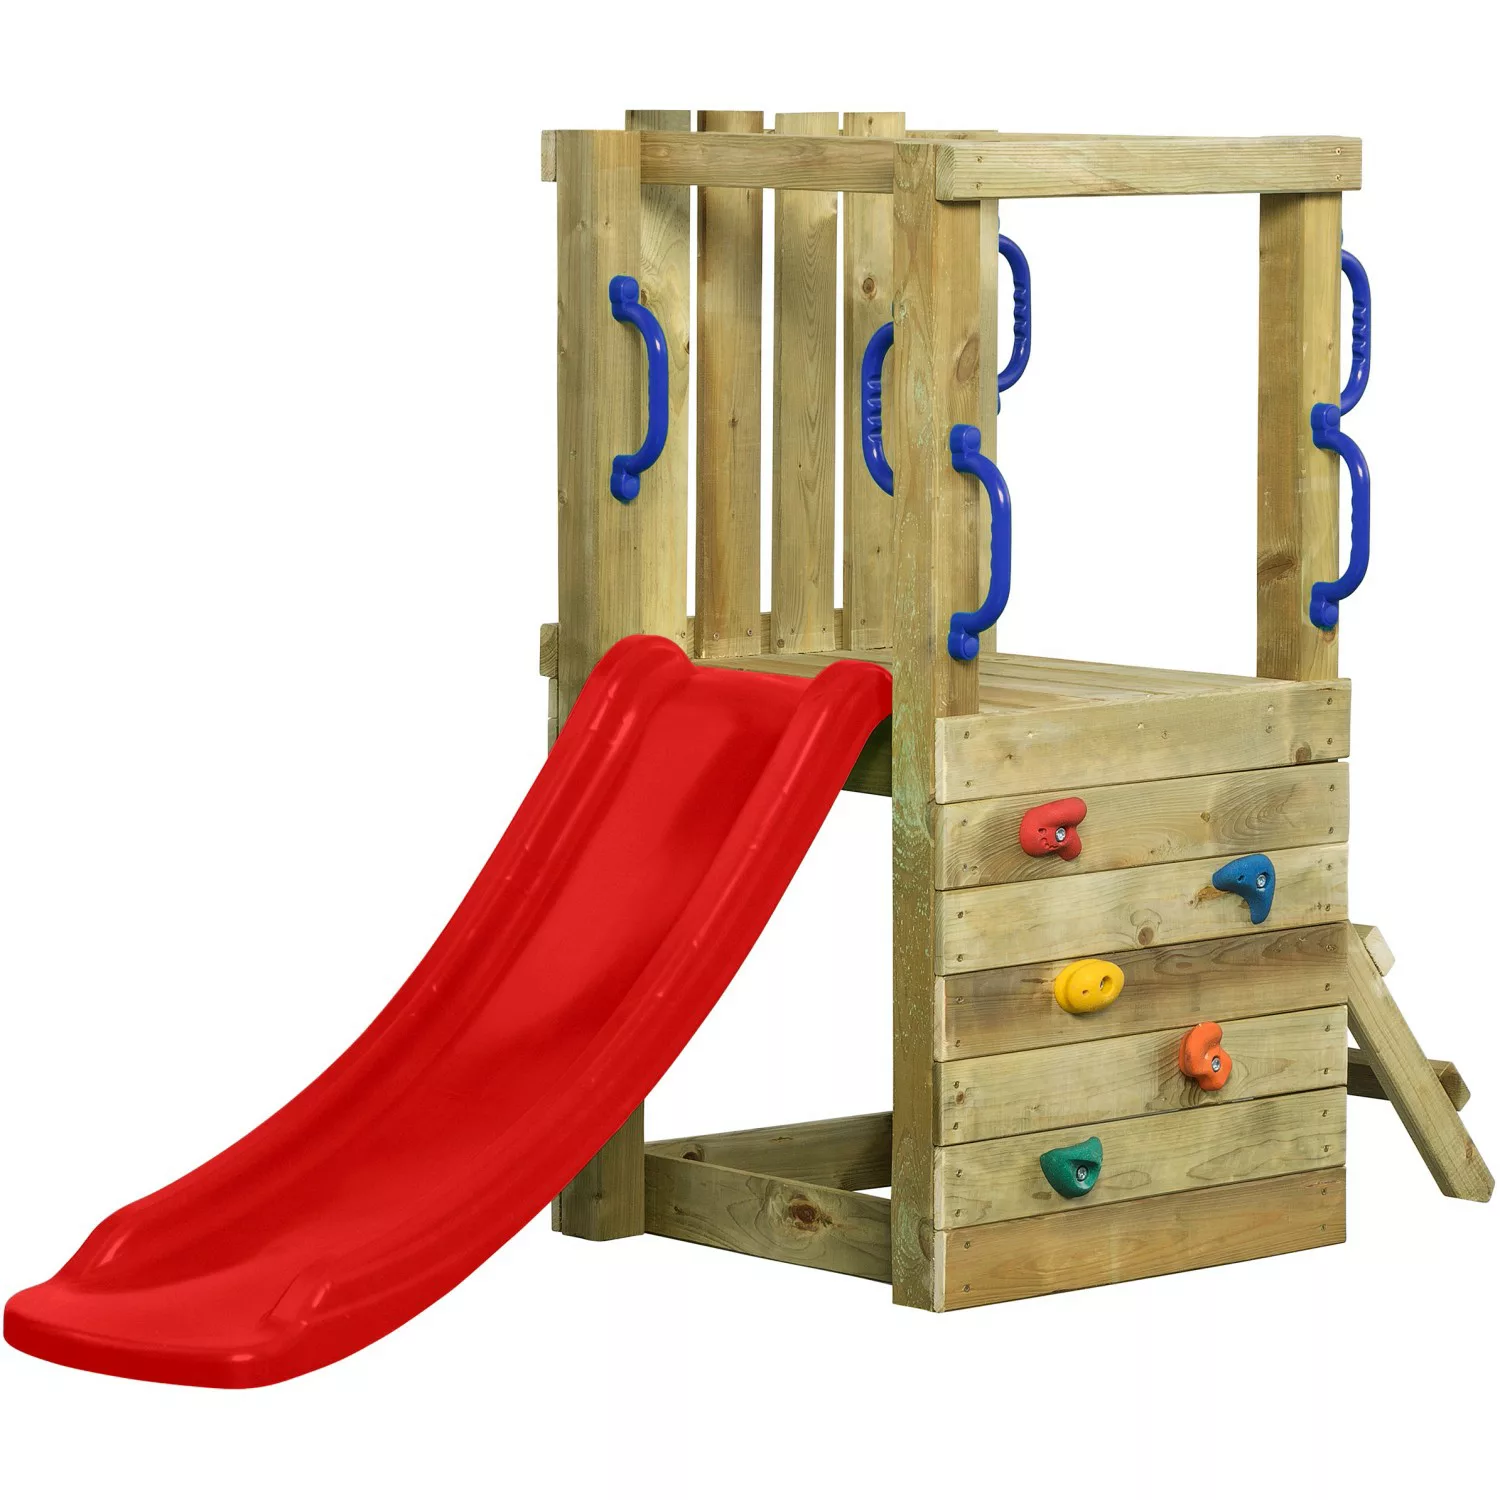 SwingKing Spielturm Irma Small mit Rutsche Rot 66 cm x 190 cm x 125 cm günstig online kaufen